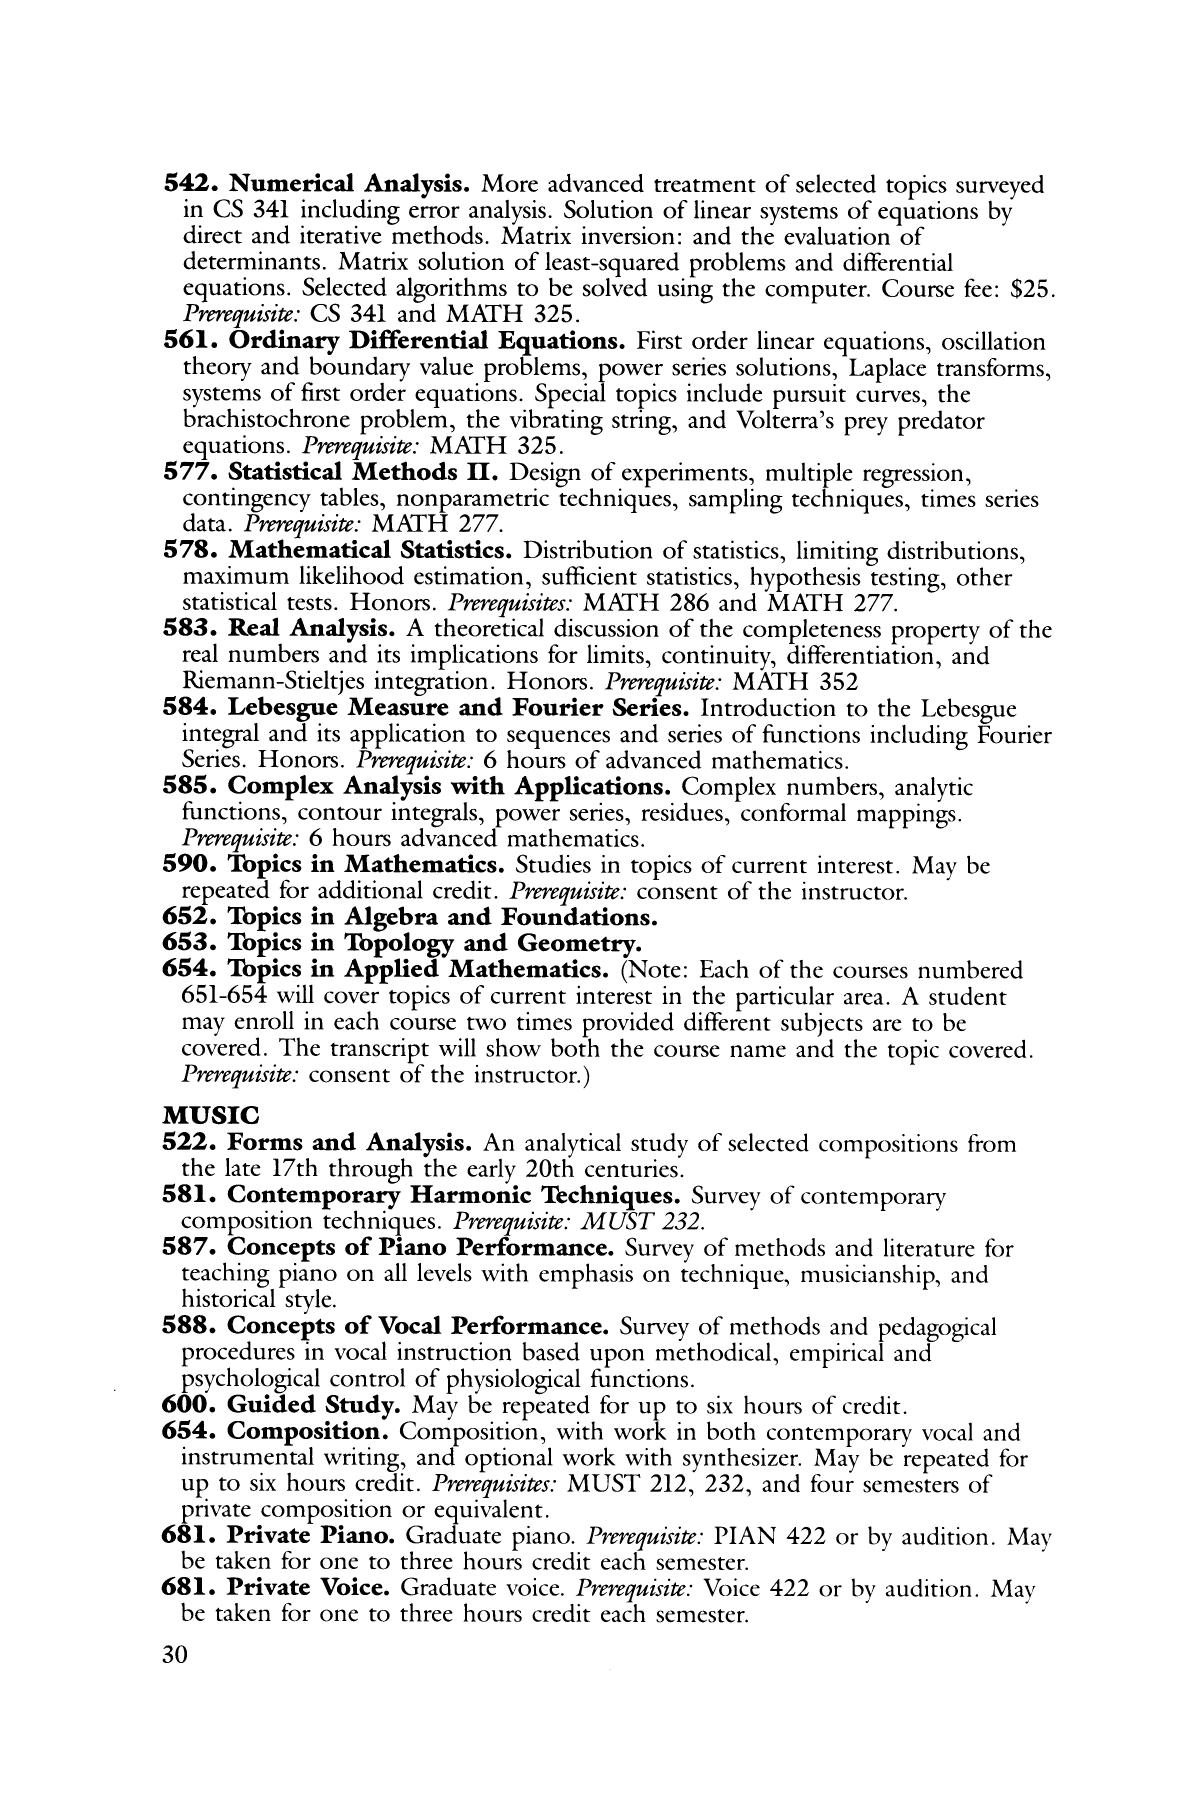 Catalog of Abilene Christian University, 1989-1990
                                                
                                                    30
                                                